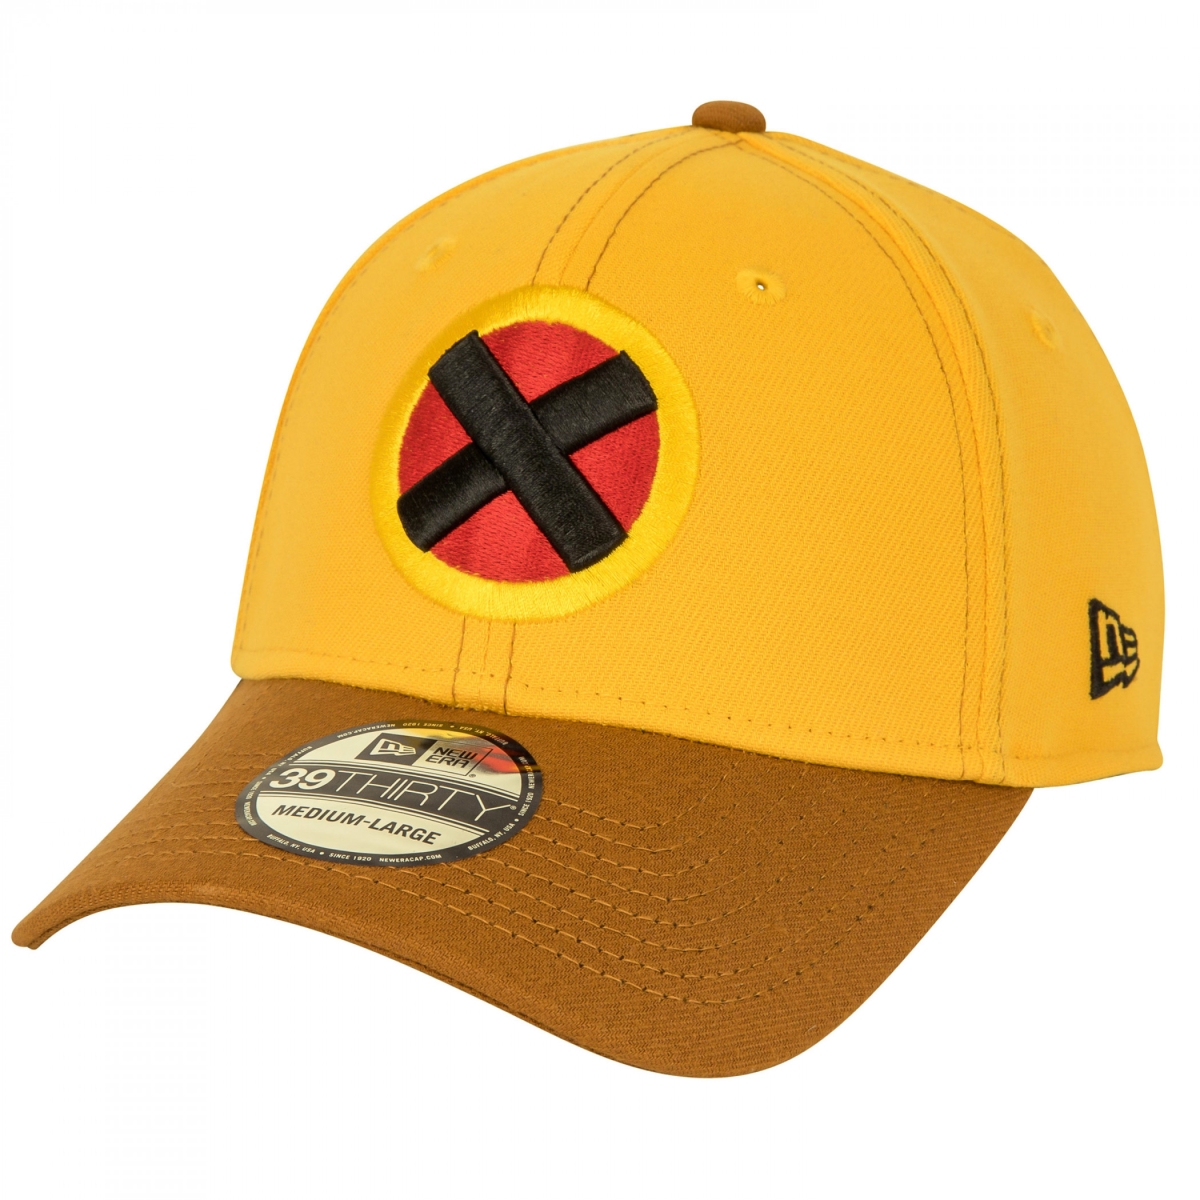 Wolverine 861596-large-xla Uncanny X-Men New Era 39Thirty Fitted Hat, Yellow & Brown - Large & Extra Large -  Wolverine Publishing LLC, 861596-large/xla